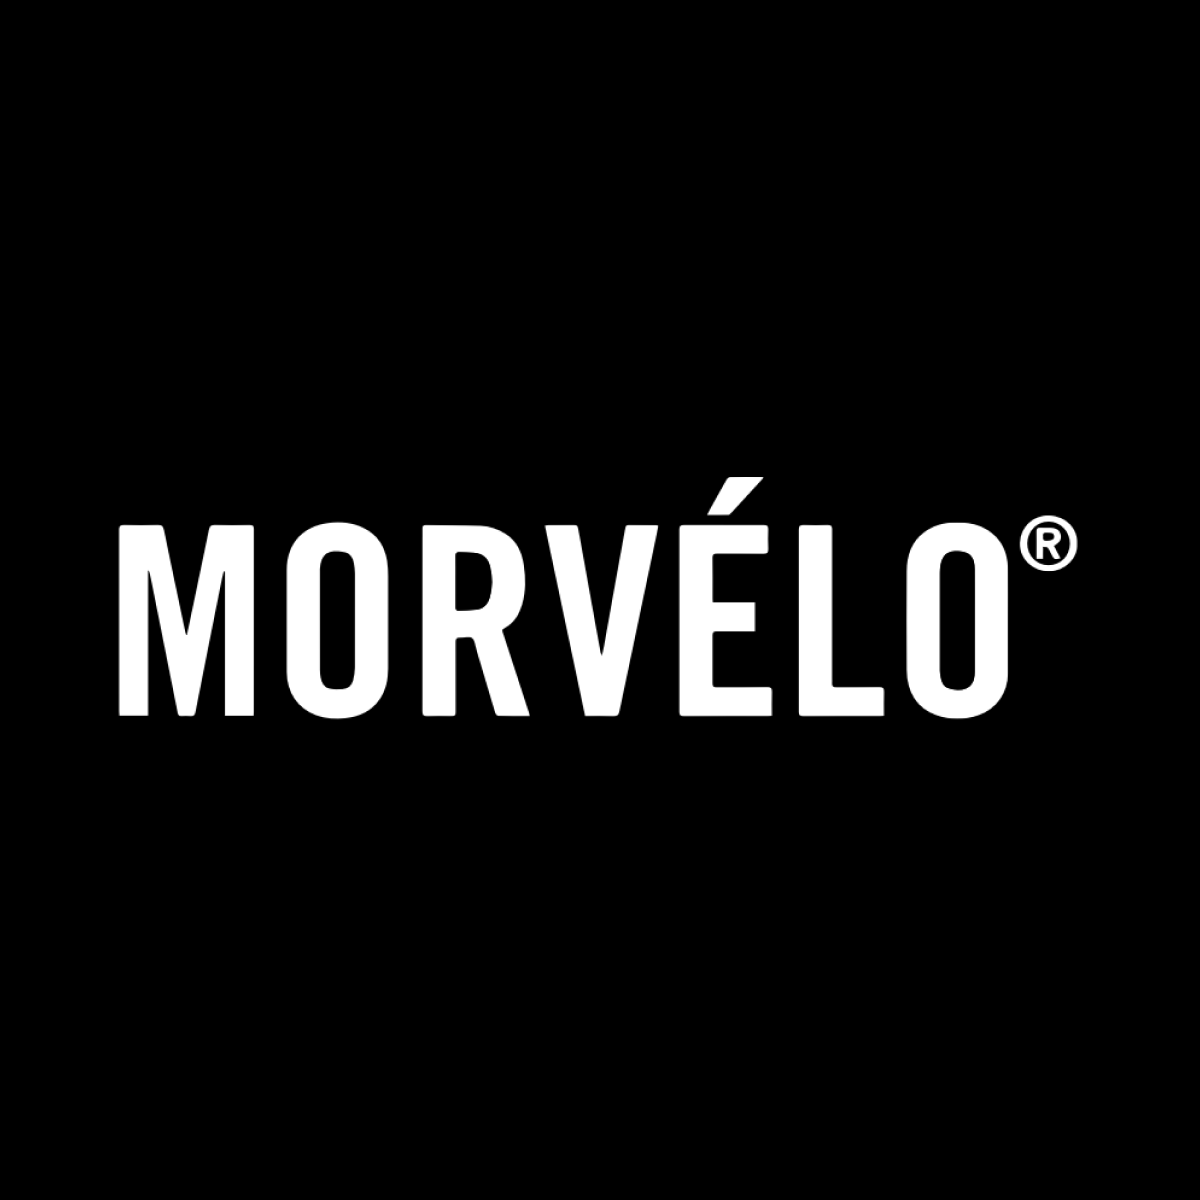 www.morvelo.com